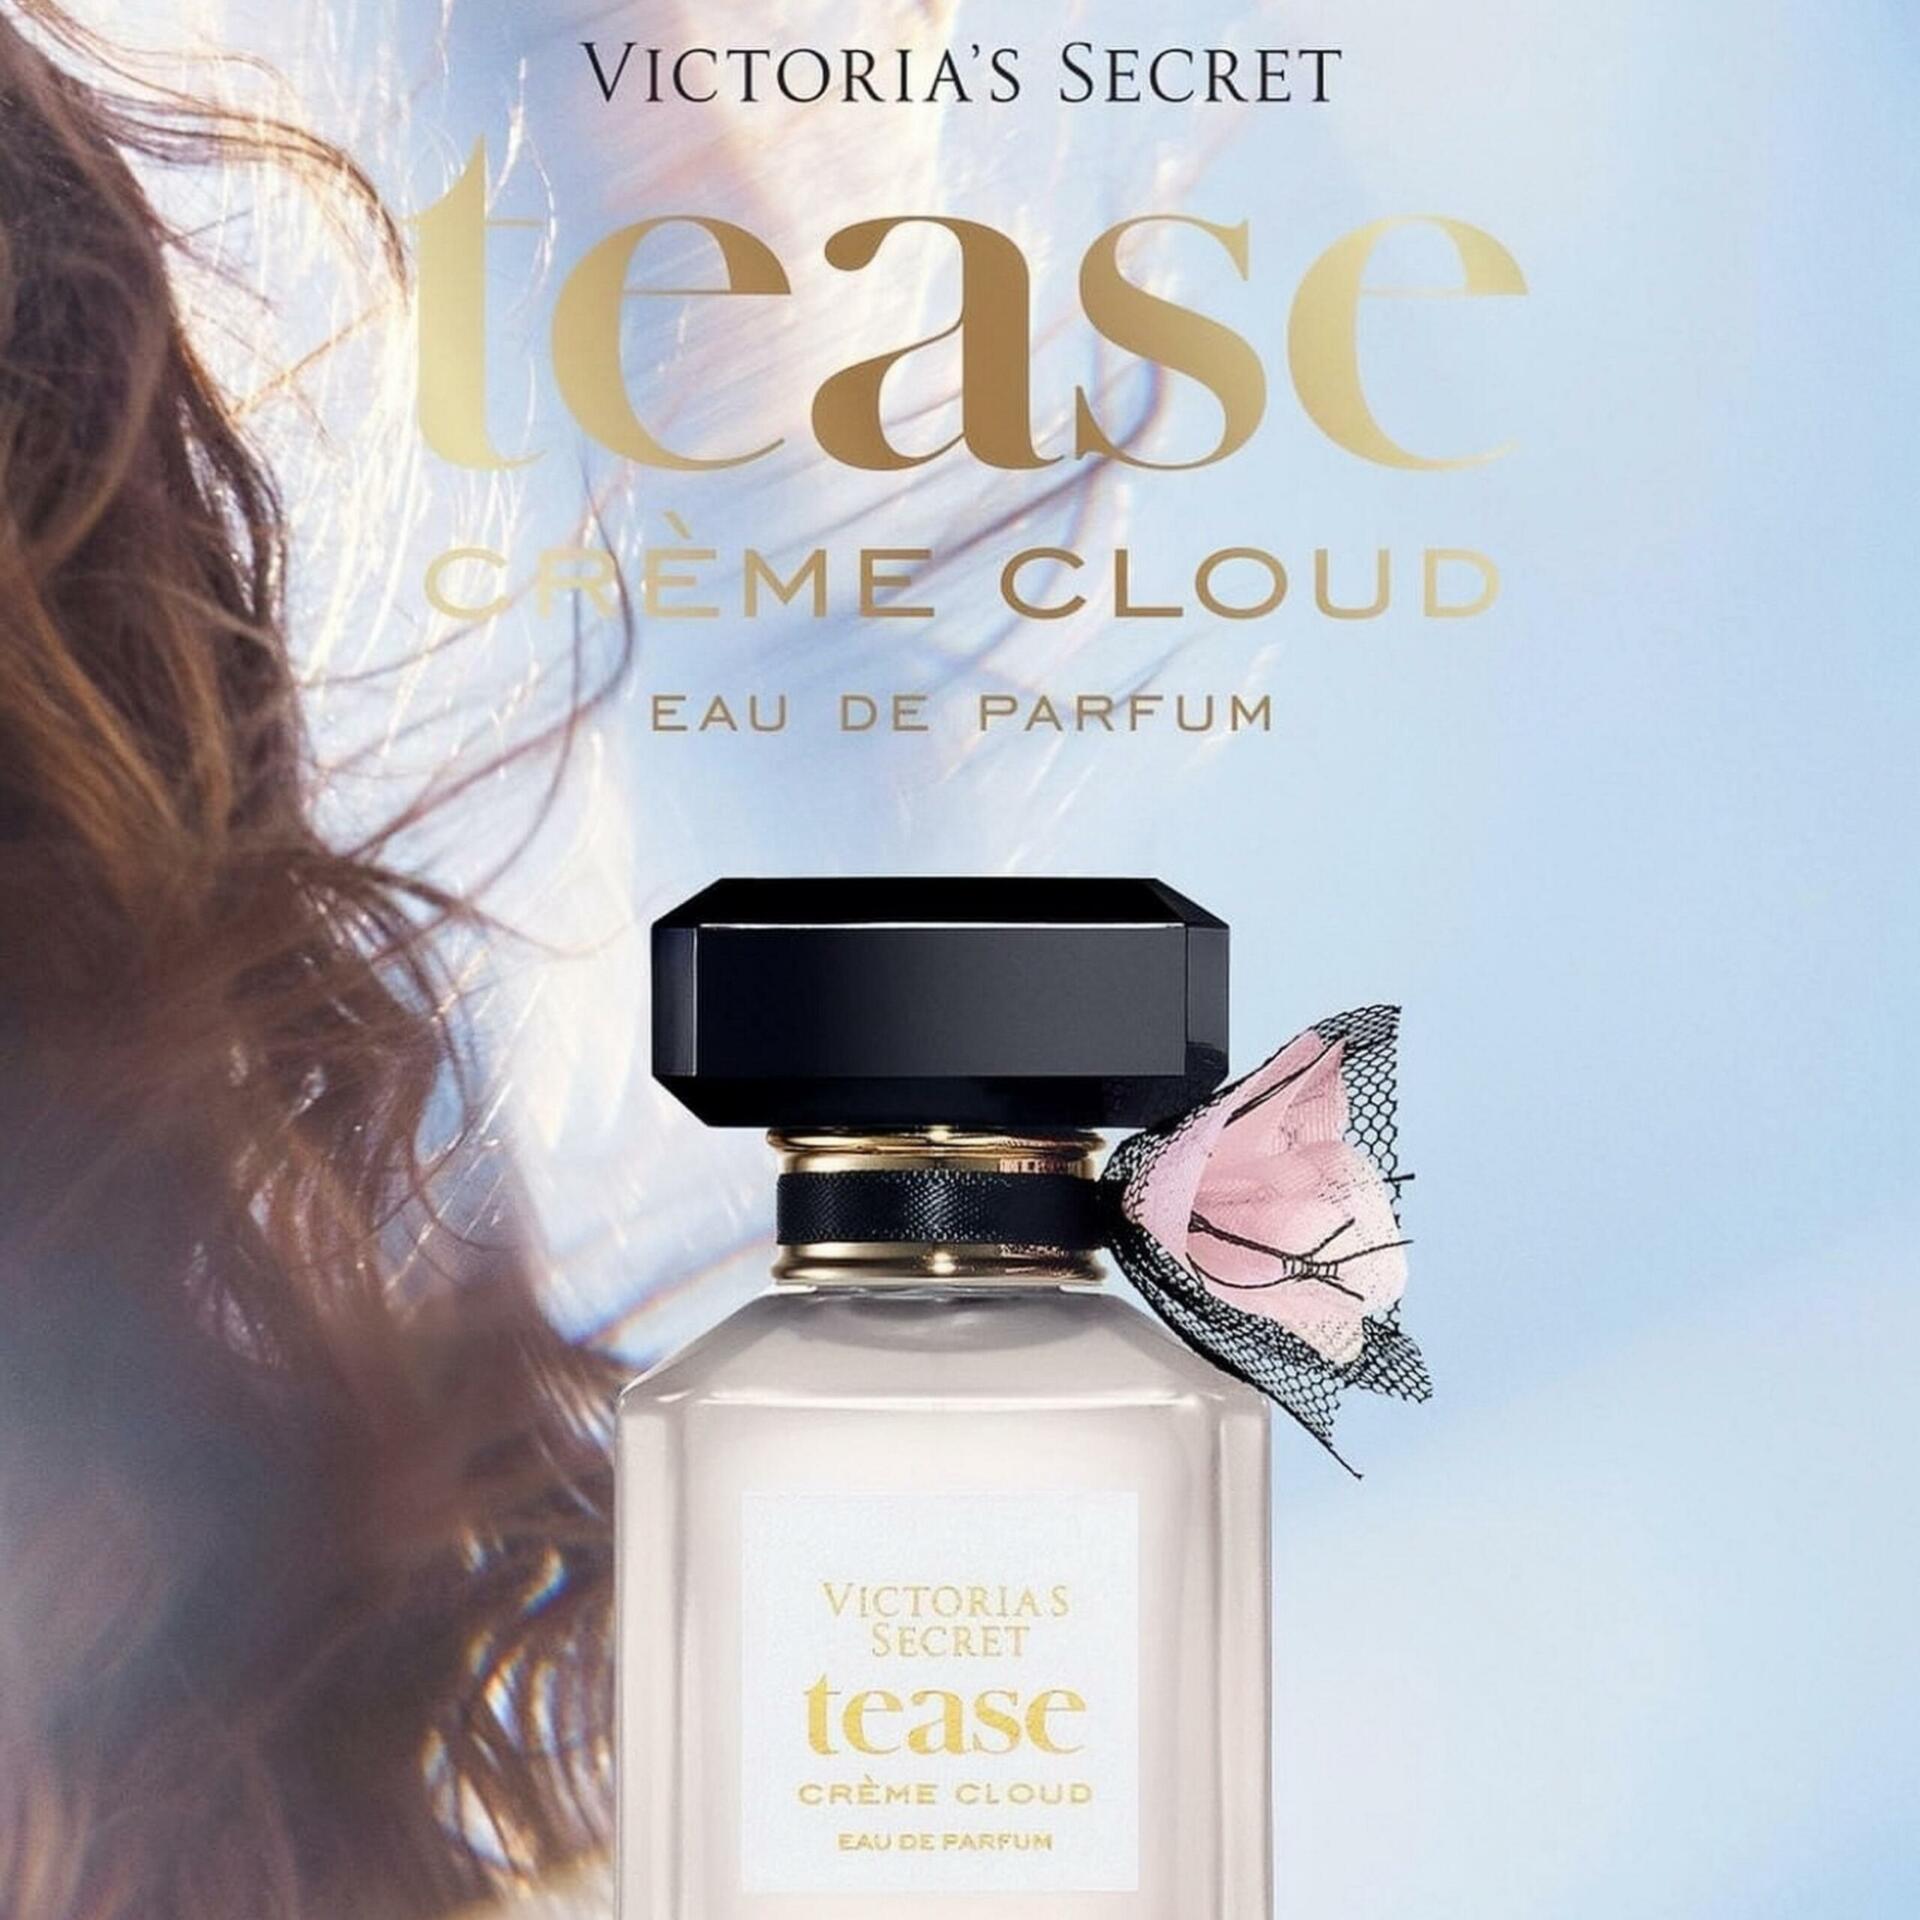 Victoria’s Secret Tease Creme Cloud - Photo 4